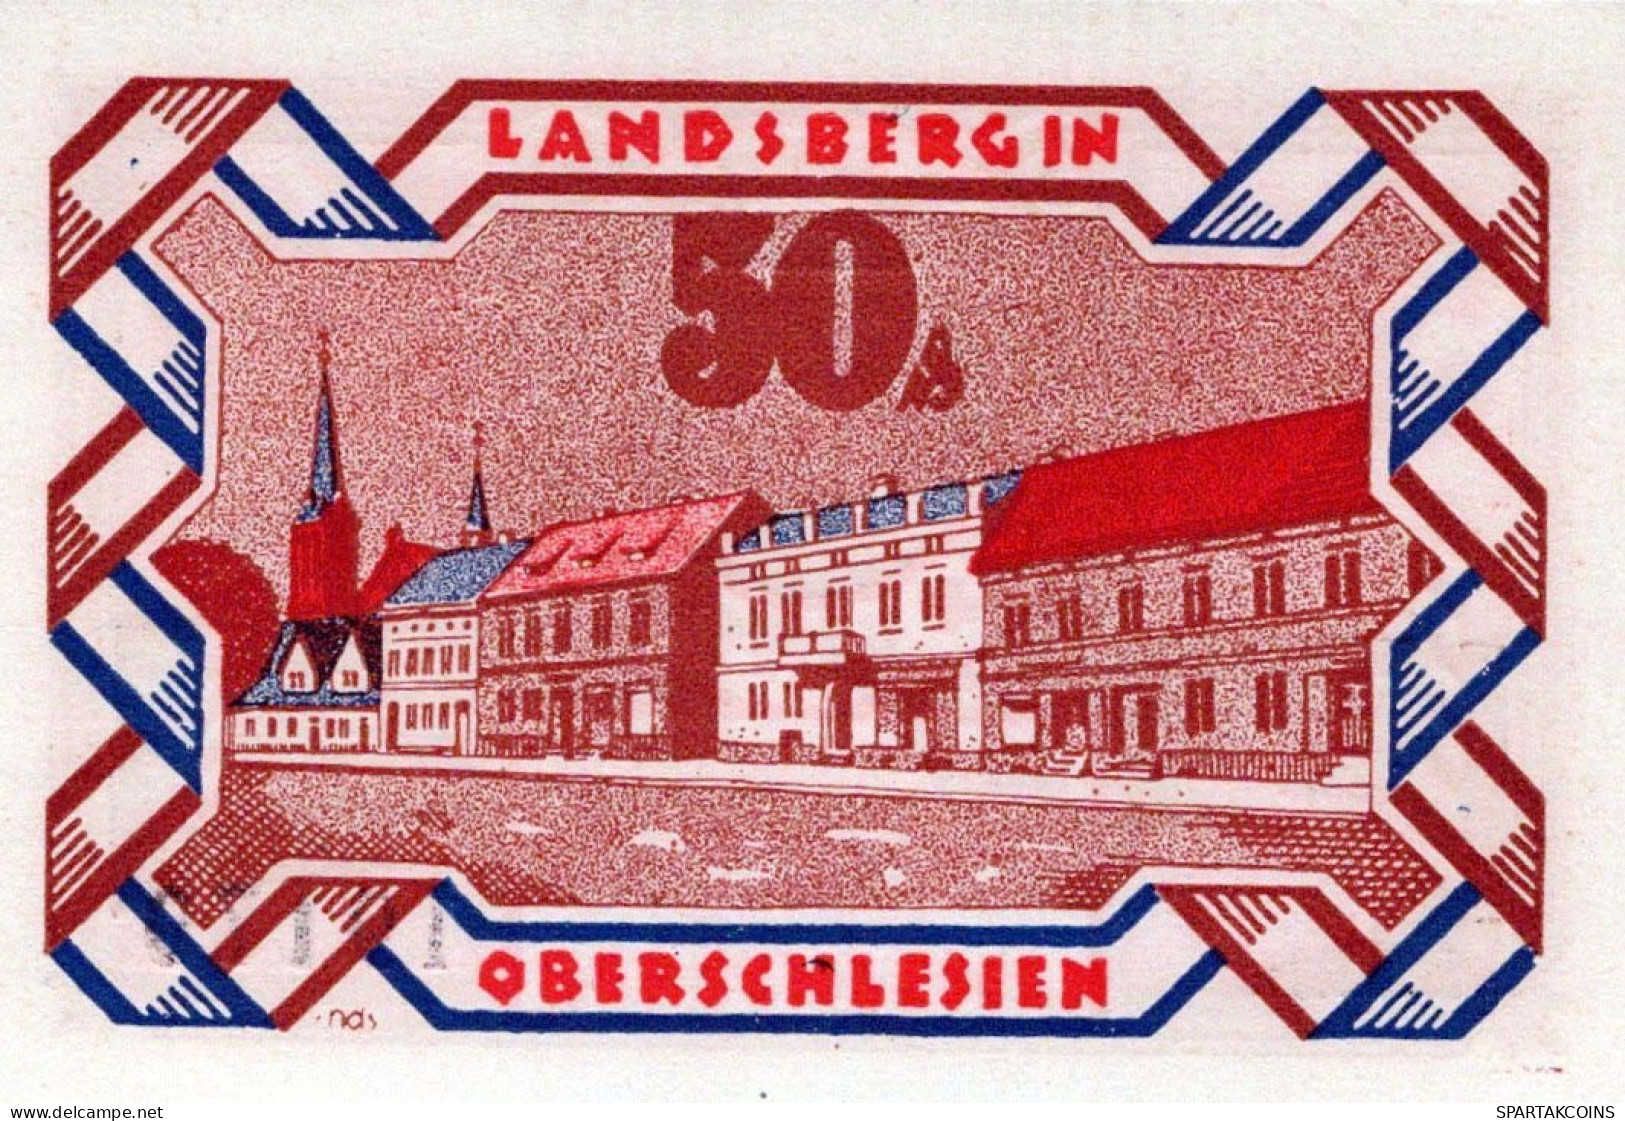 50 PFENNIG 1922 Stadt LANDSBERG OBERSCHLESIEN UNC DEUTSCHLAND #PB927 - [11] Emissions Locales